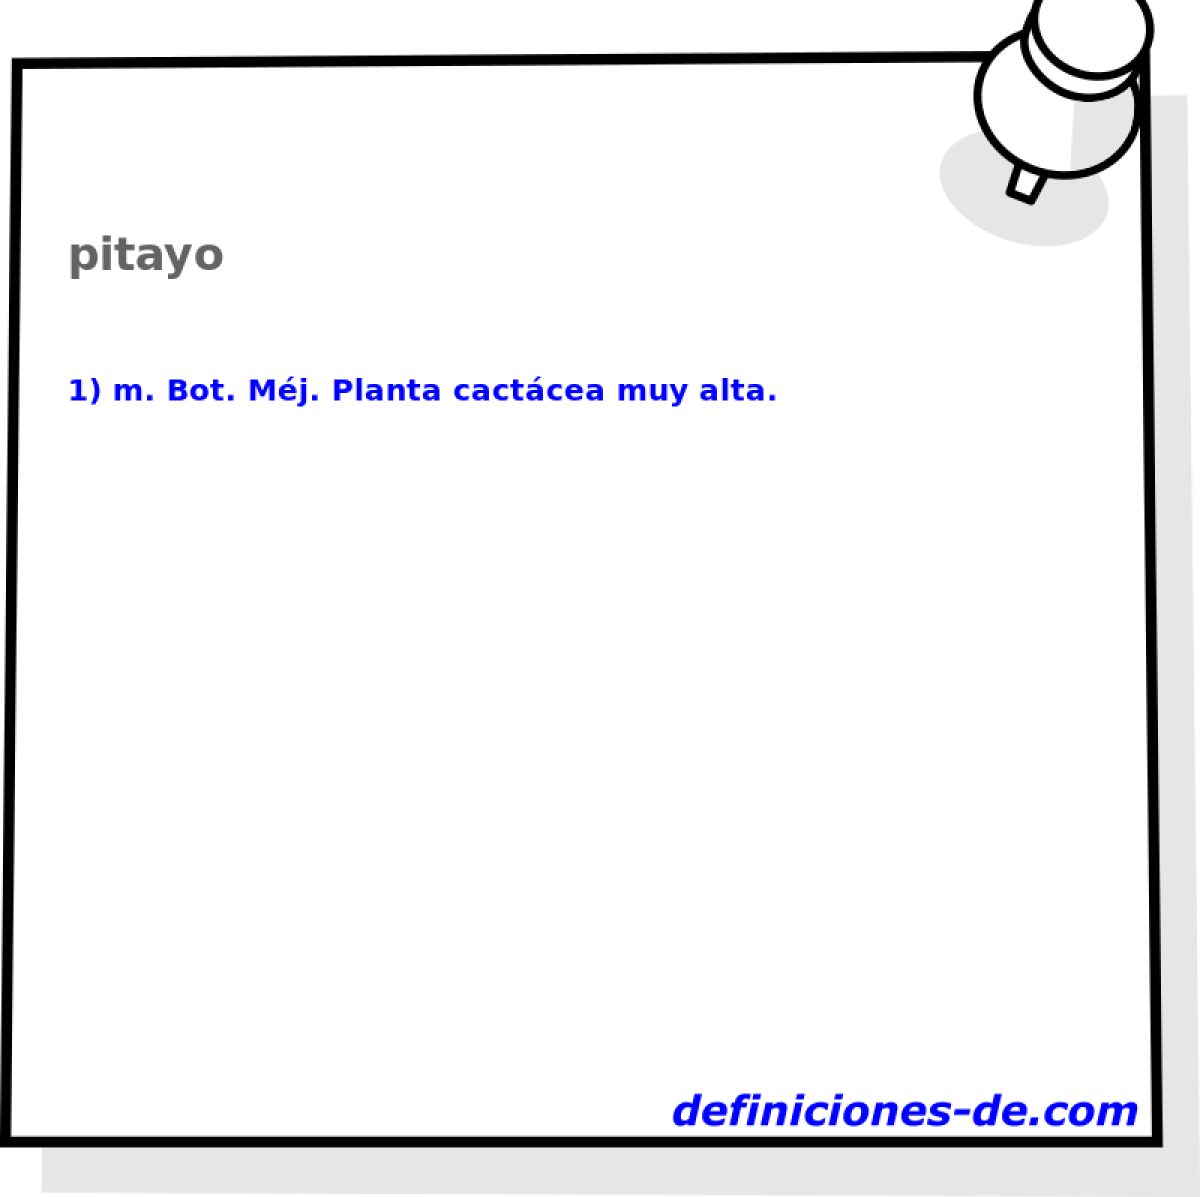 pitayo 